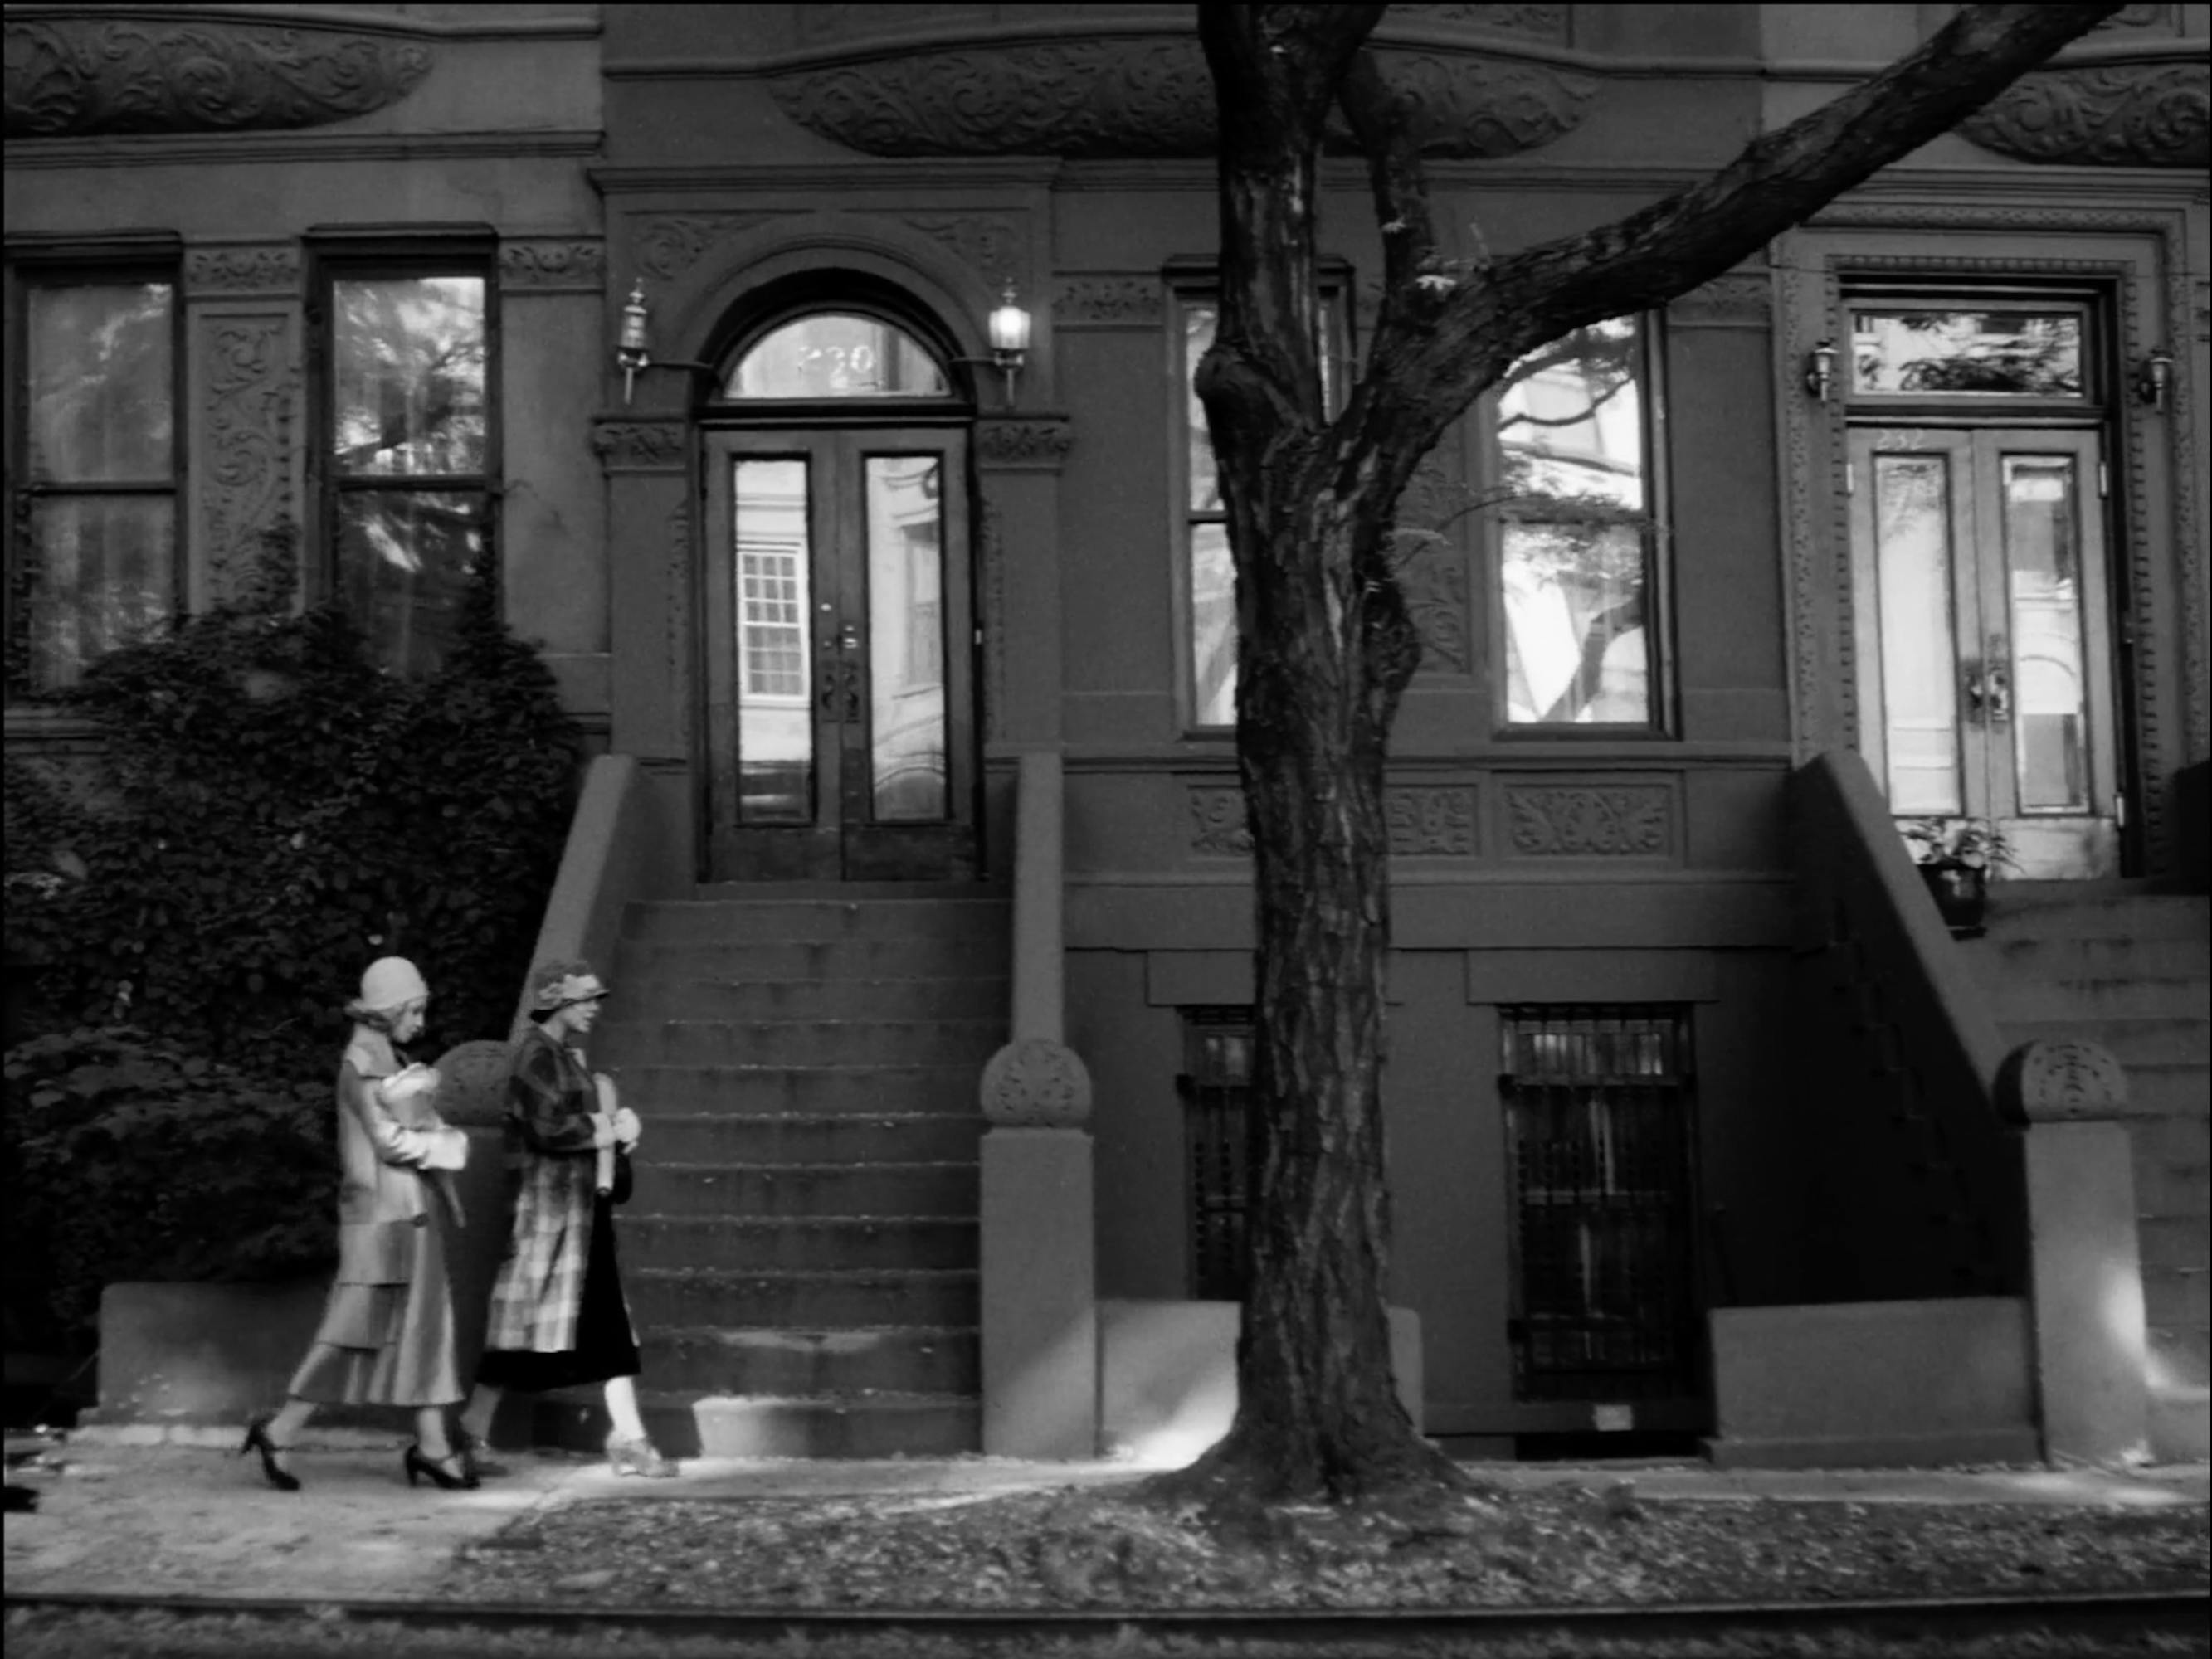 Clare (Ruth Negga) and Irene (Tessa Thompson) walk past beautiful brownstones in this black-and-white shot.